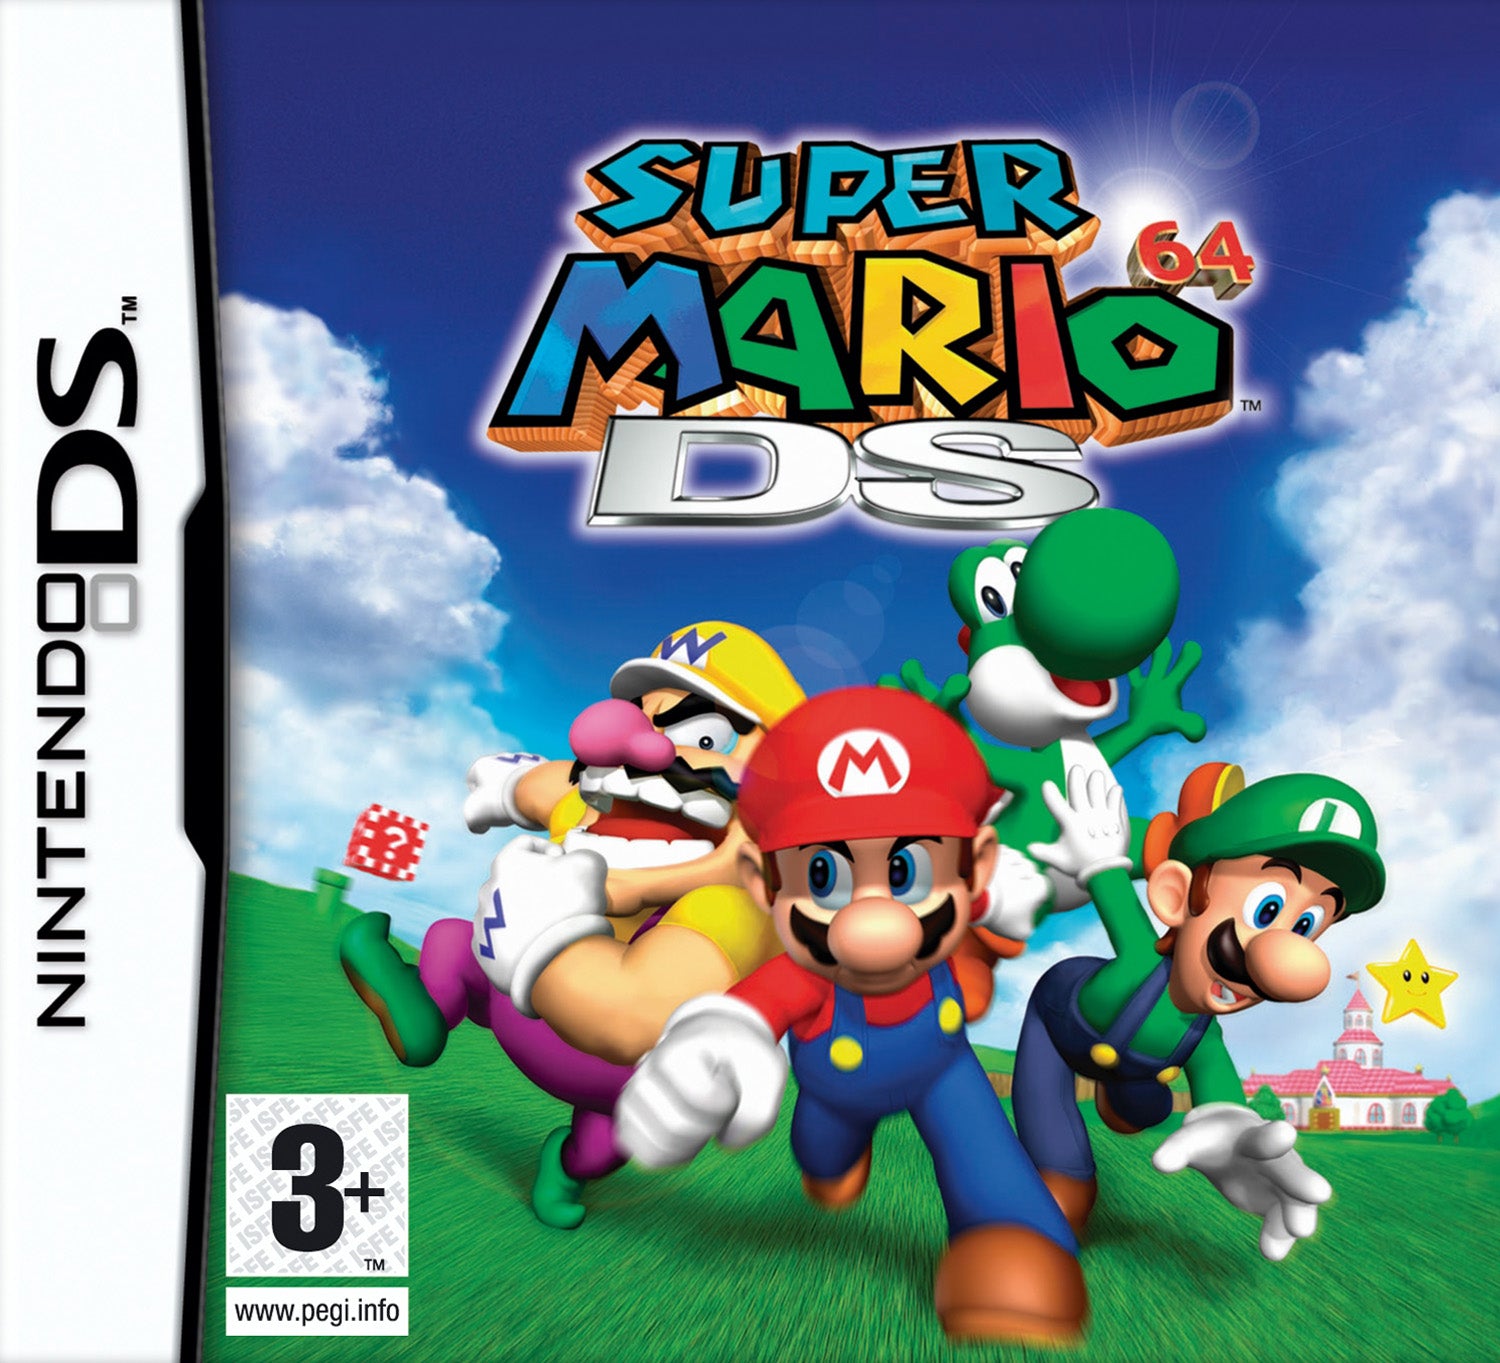 Game | Nintendo DS | Super Mario 64 DS